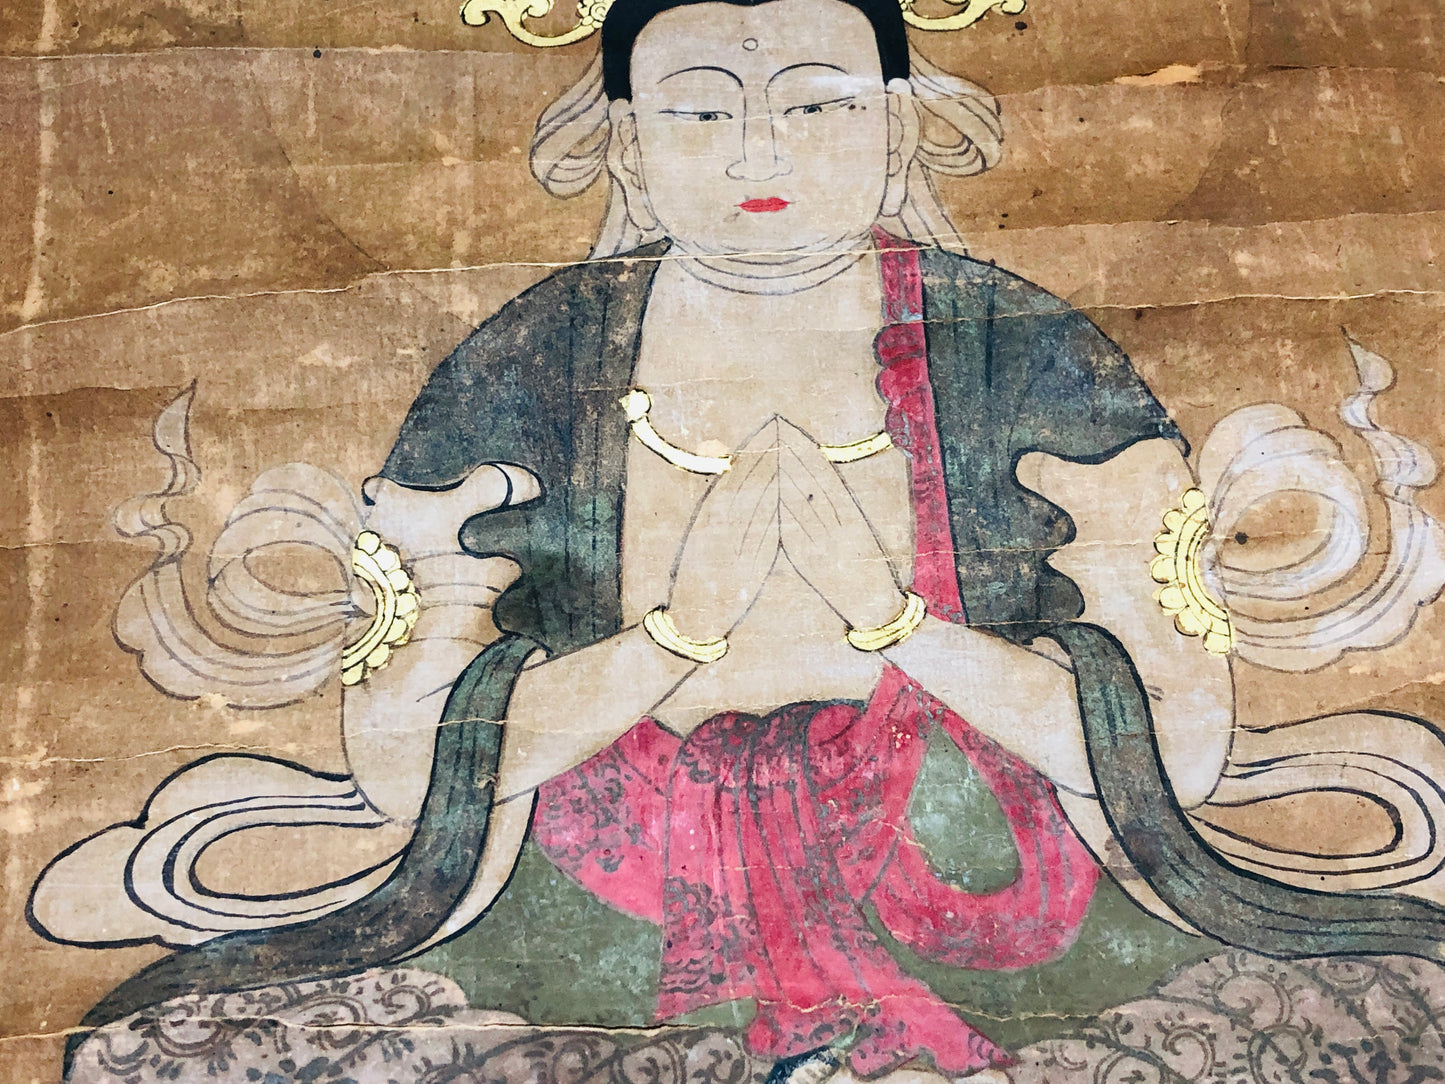 Y6239 [VIDEO] KAKEJIKU Togyokusai Buddhist painting Japan antique hanging scroll art